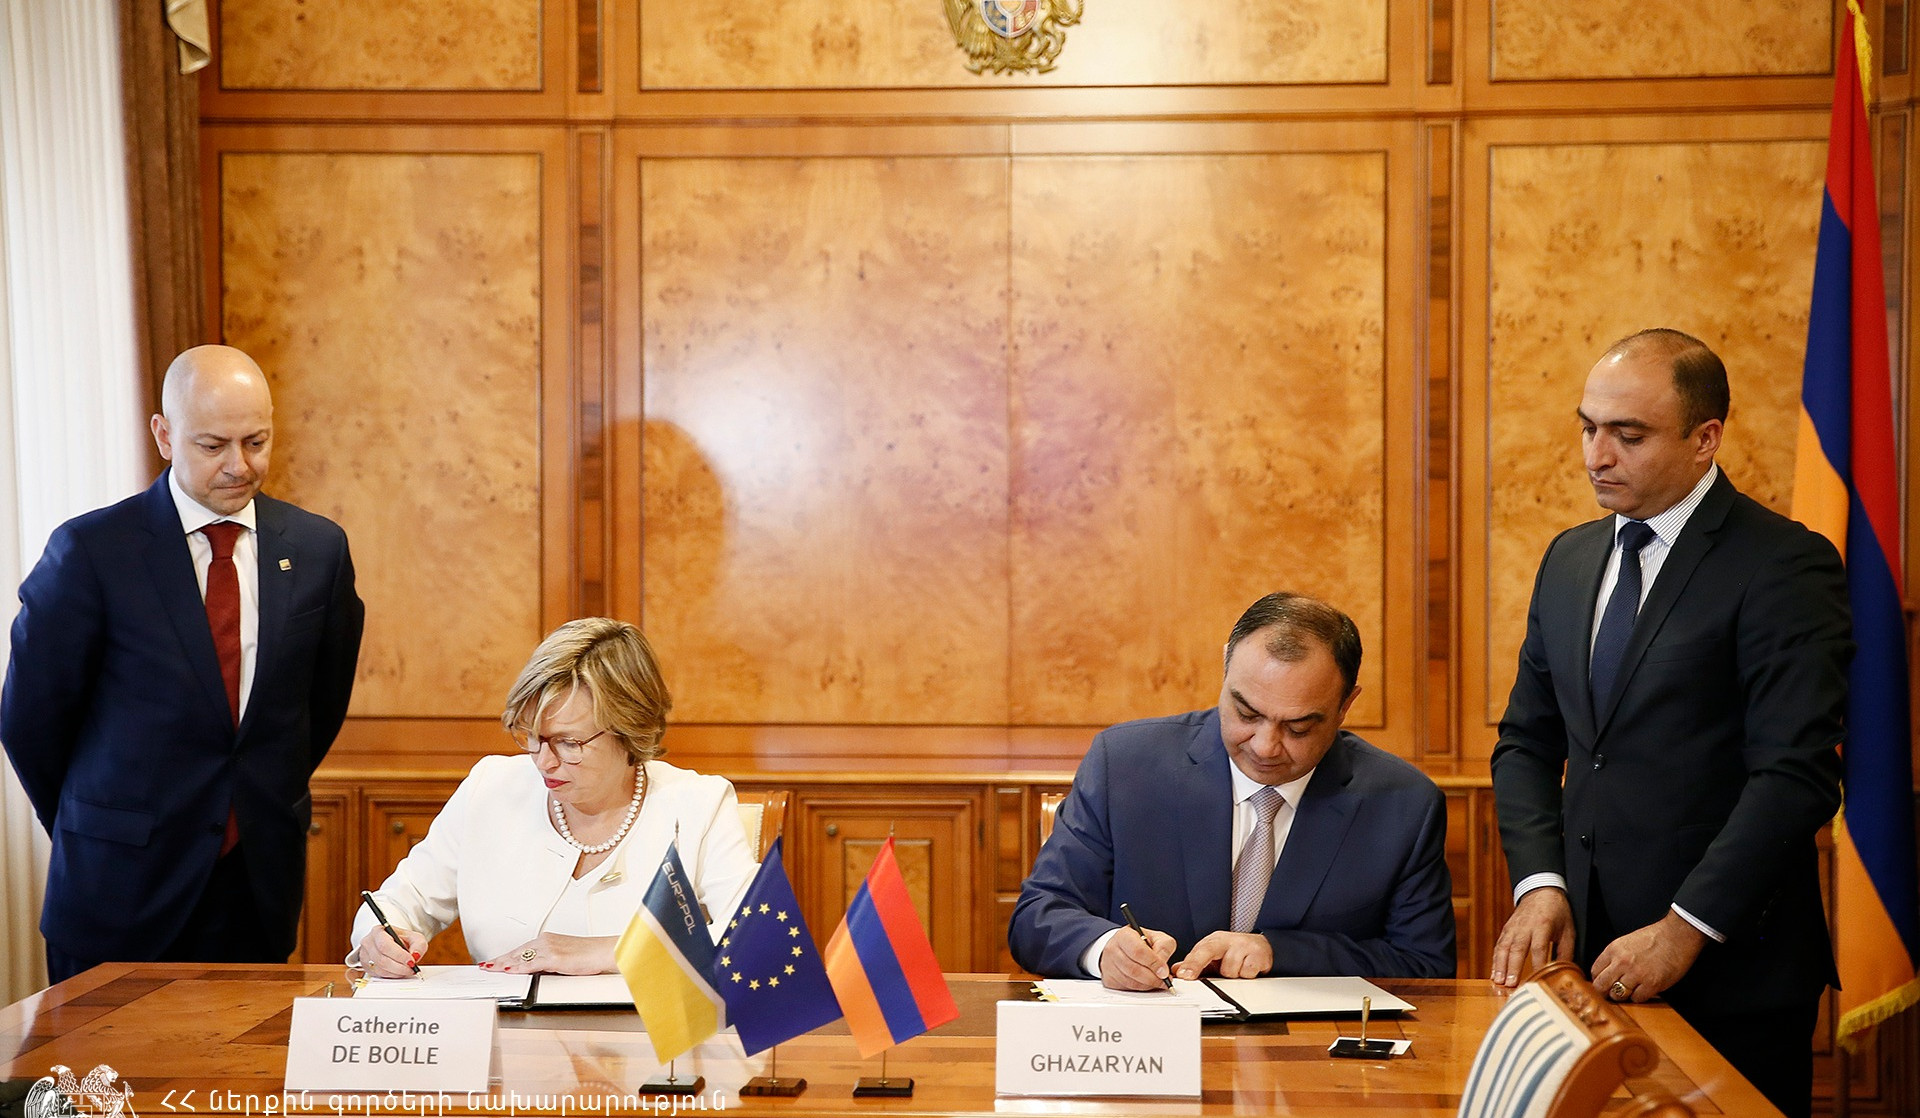 ՀՀ ՆԳ նախարարը և Եվրոպոլի գործադիր տնօրենը փոխըմբռնման հուշագիր և համաձայնագիր են ստորագրել